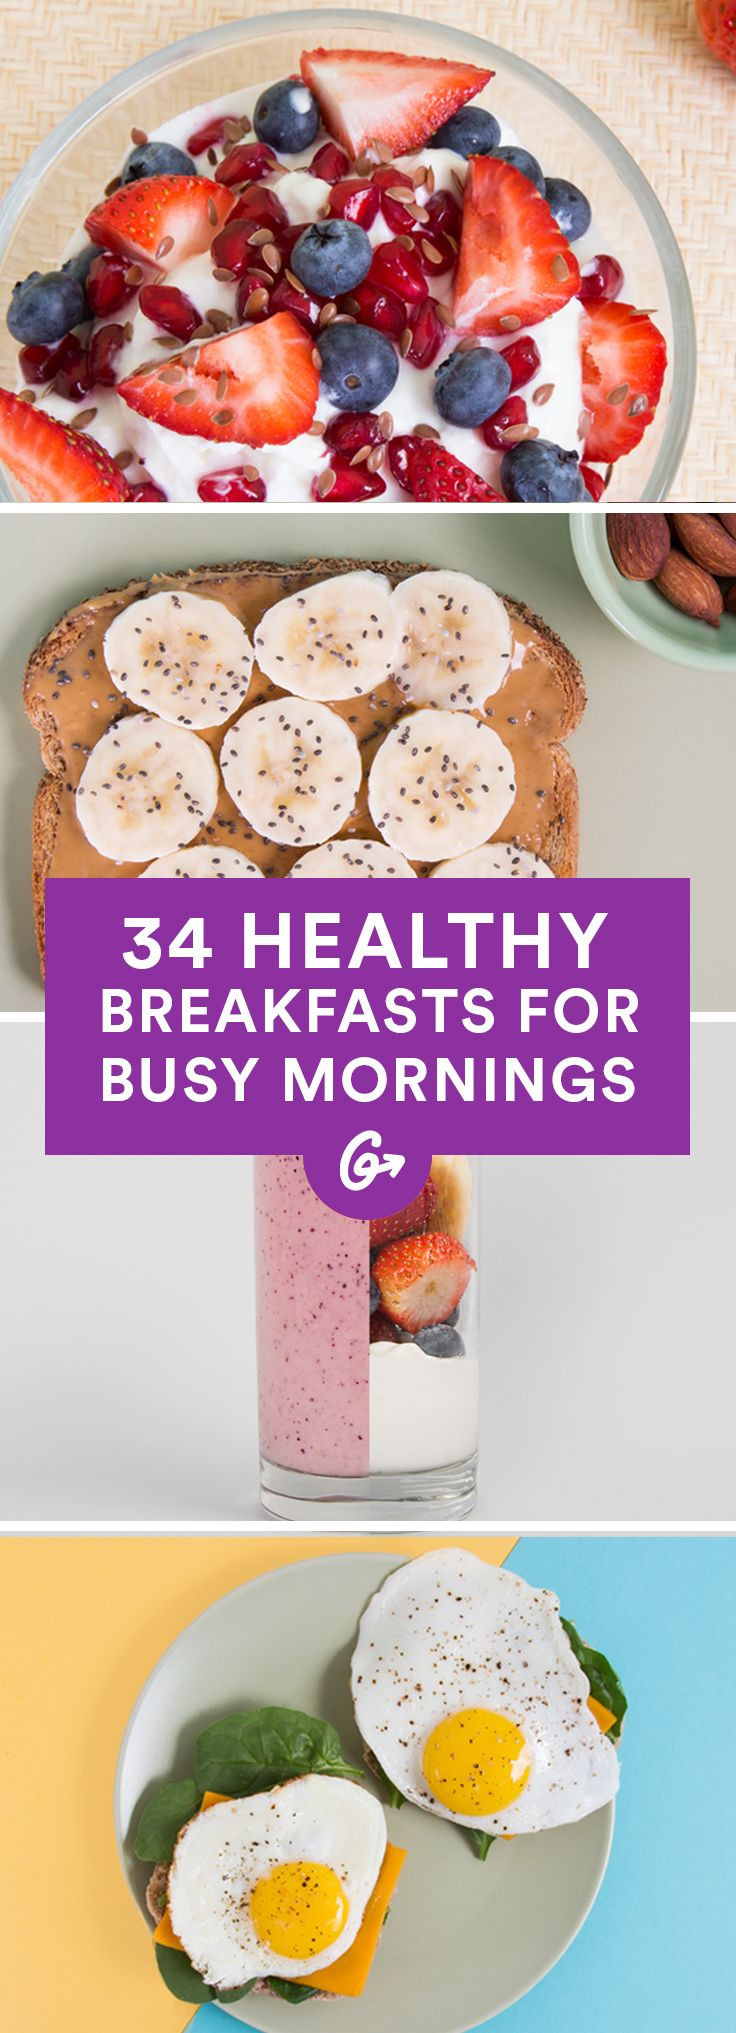 Healthy Fast Breakfast
 25 best ideas about Healthy breakfasts on Pinterest